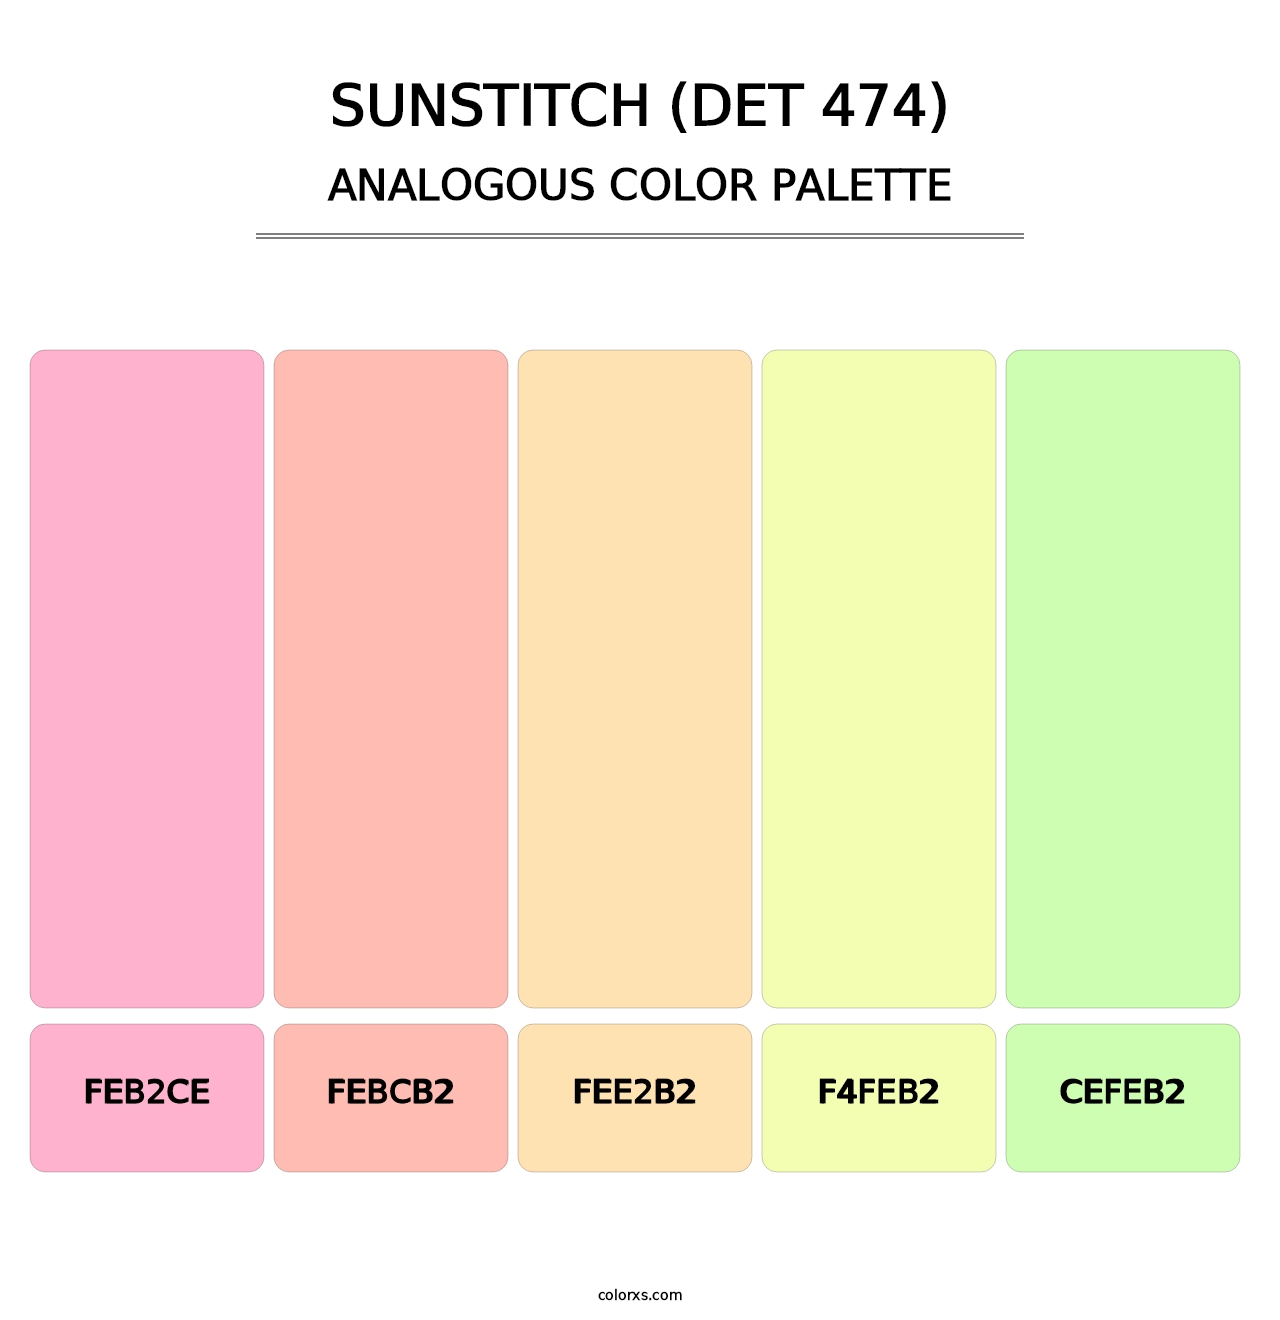 Sunstitch (DET 474) - Analogous Color Palette